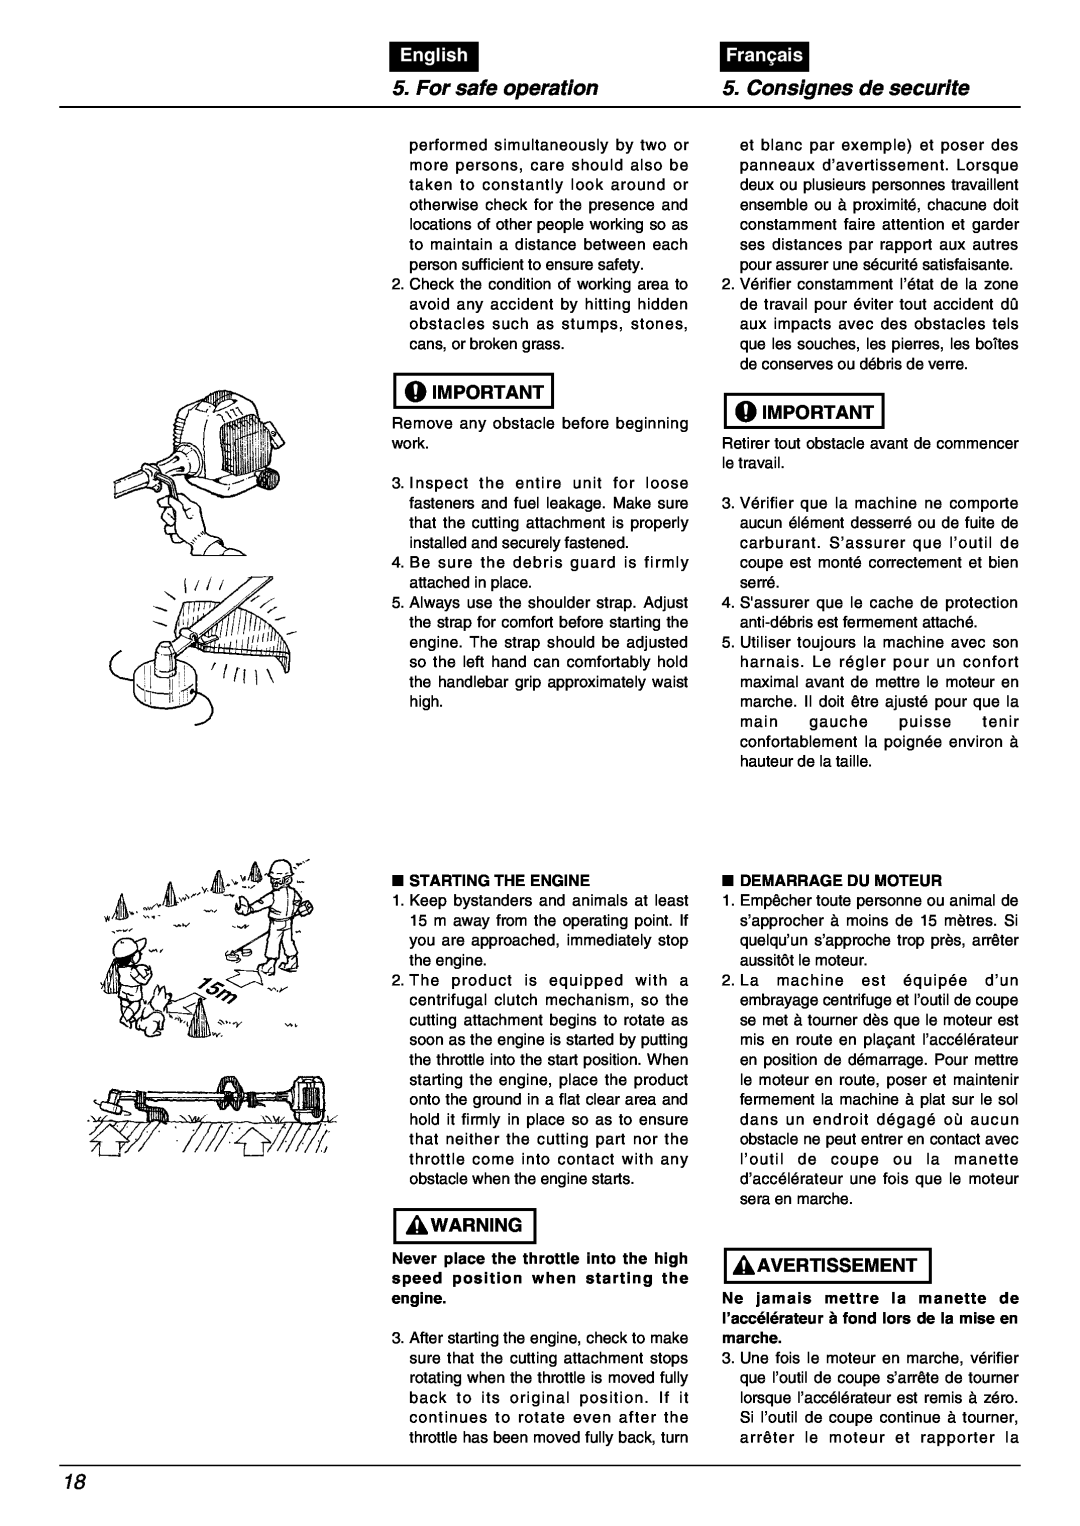 Zenoah BC2000 manual For safe operation, Consignes de securite, English, Français, Starting The Engine, Demarrage Du Moteur 